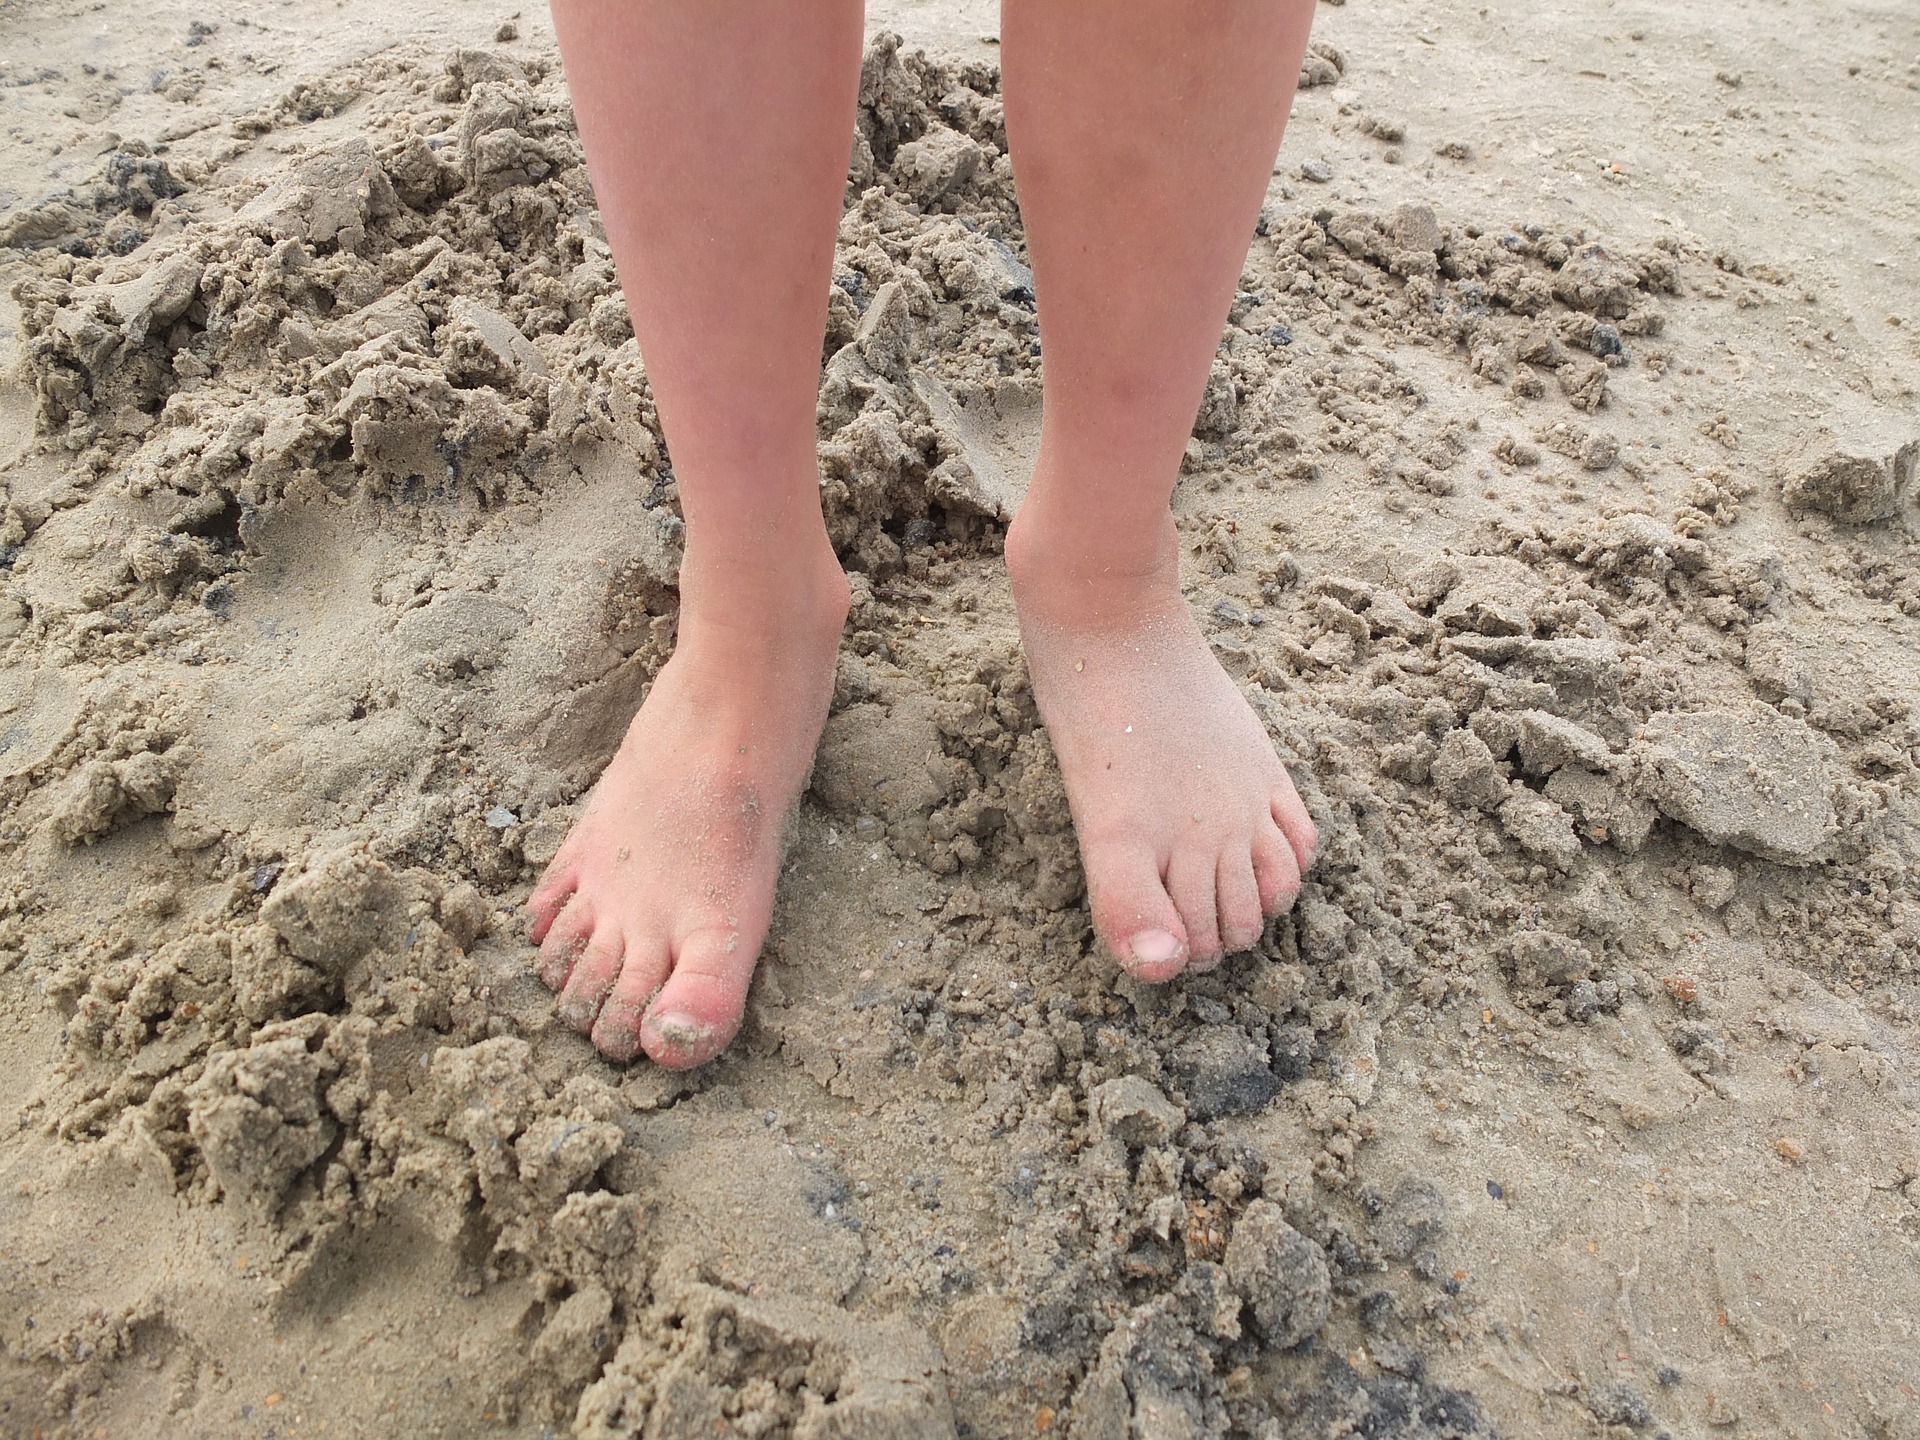 Feet on the beach. 